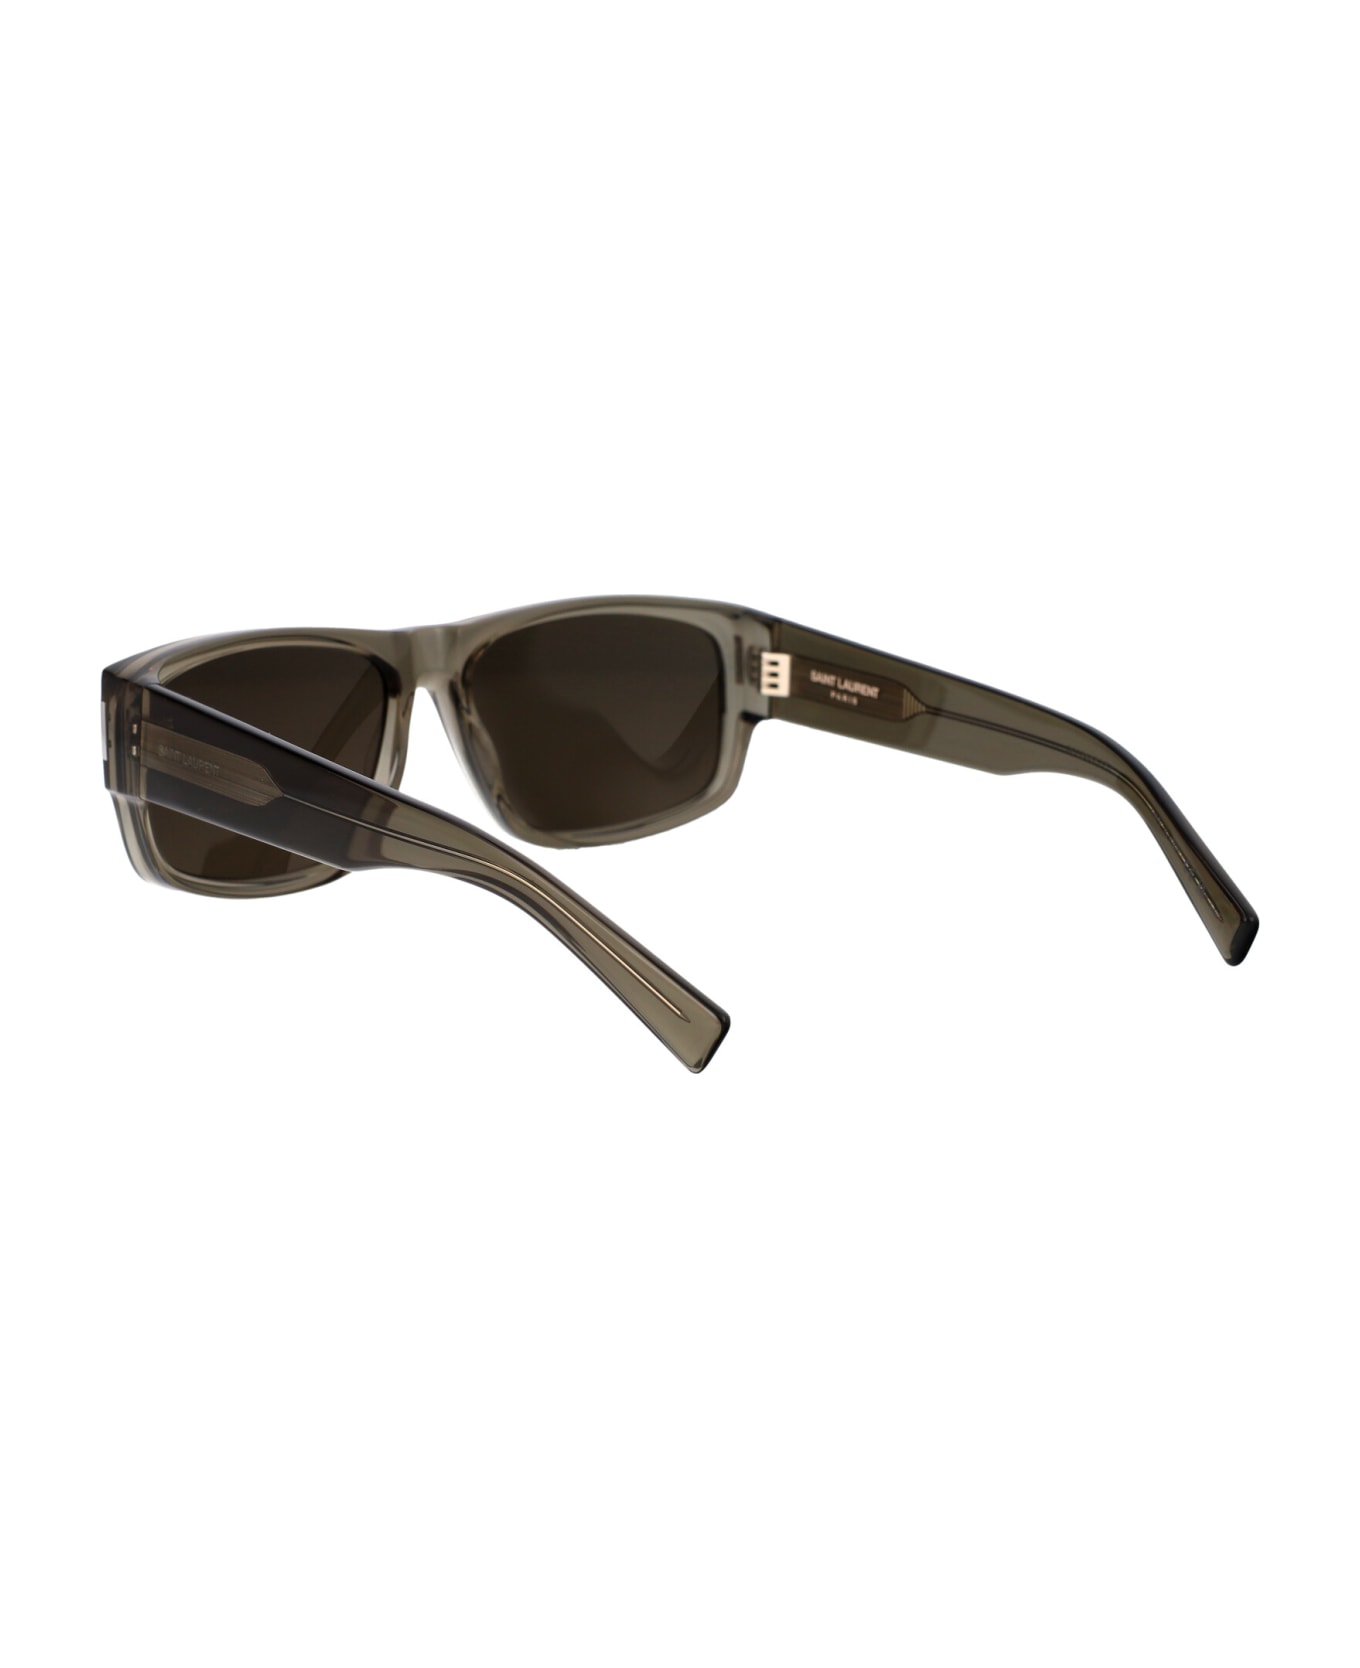 Saint Laurent Eyewear Sl 689 Sunglasses - 004 BROWN BROWN GREY